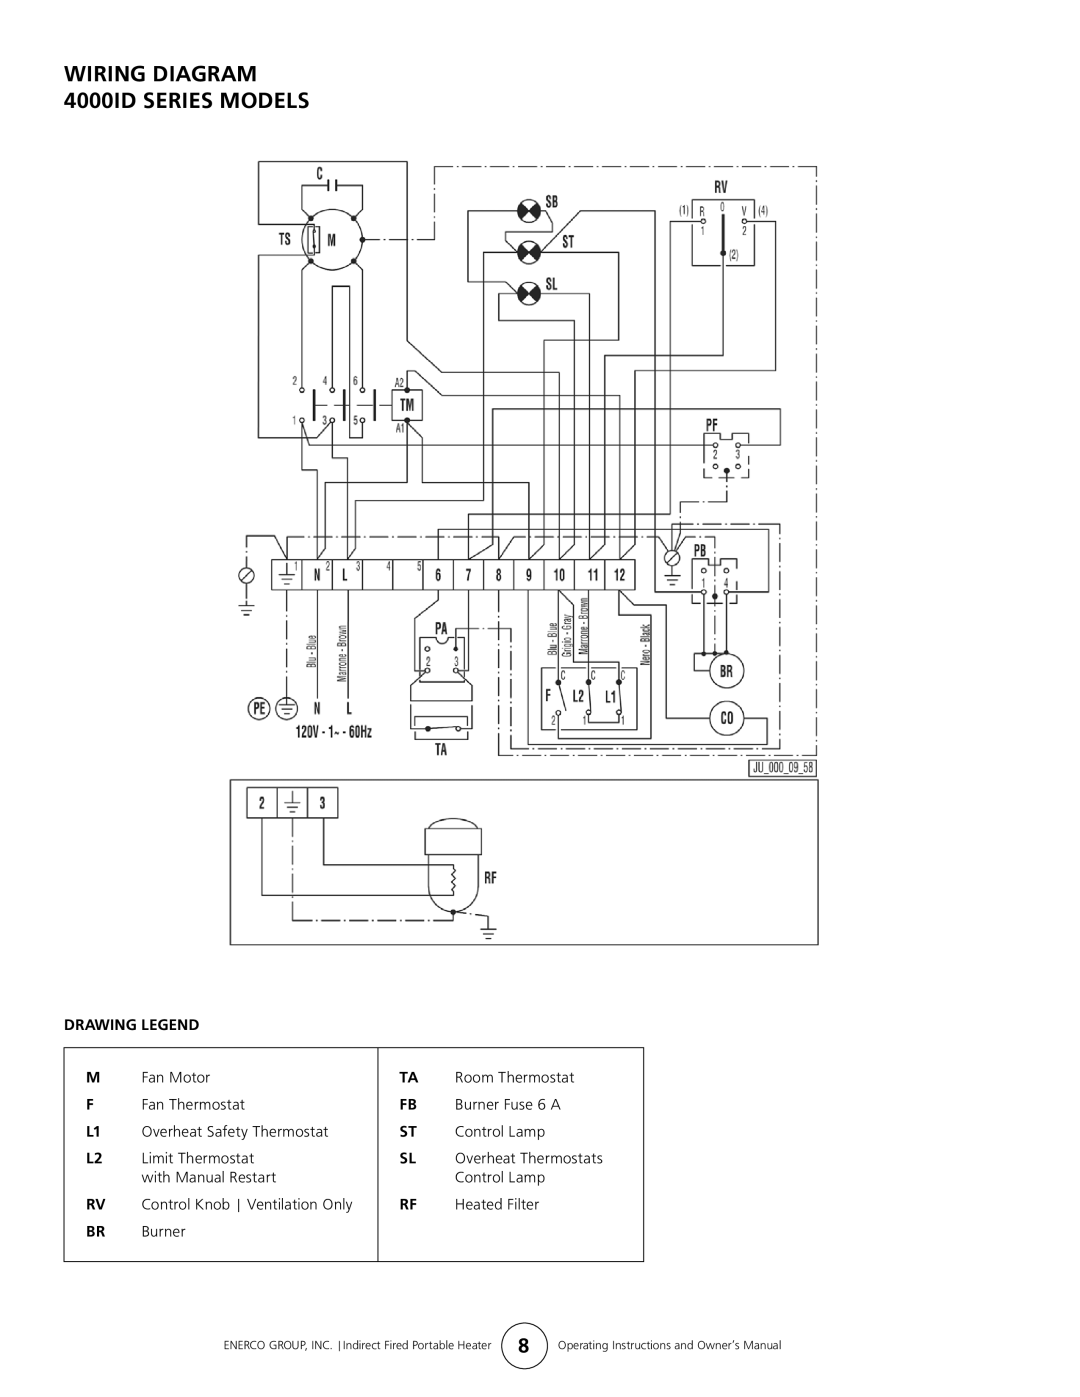 Enerco 7000ID owner manual Wiring Diagram 4000iD Series Models 